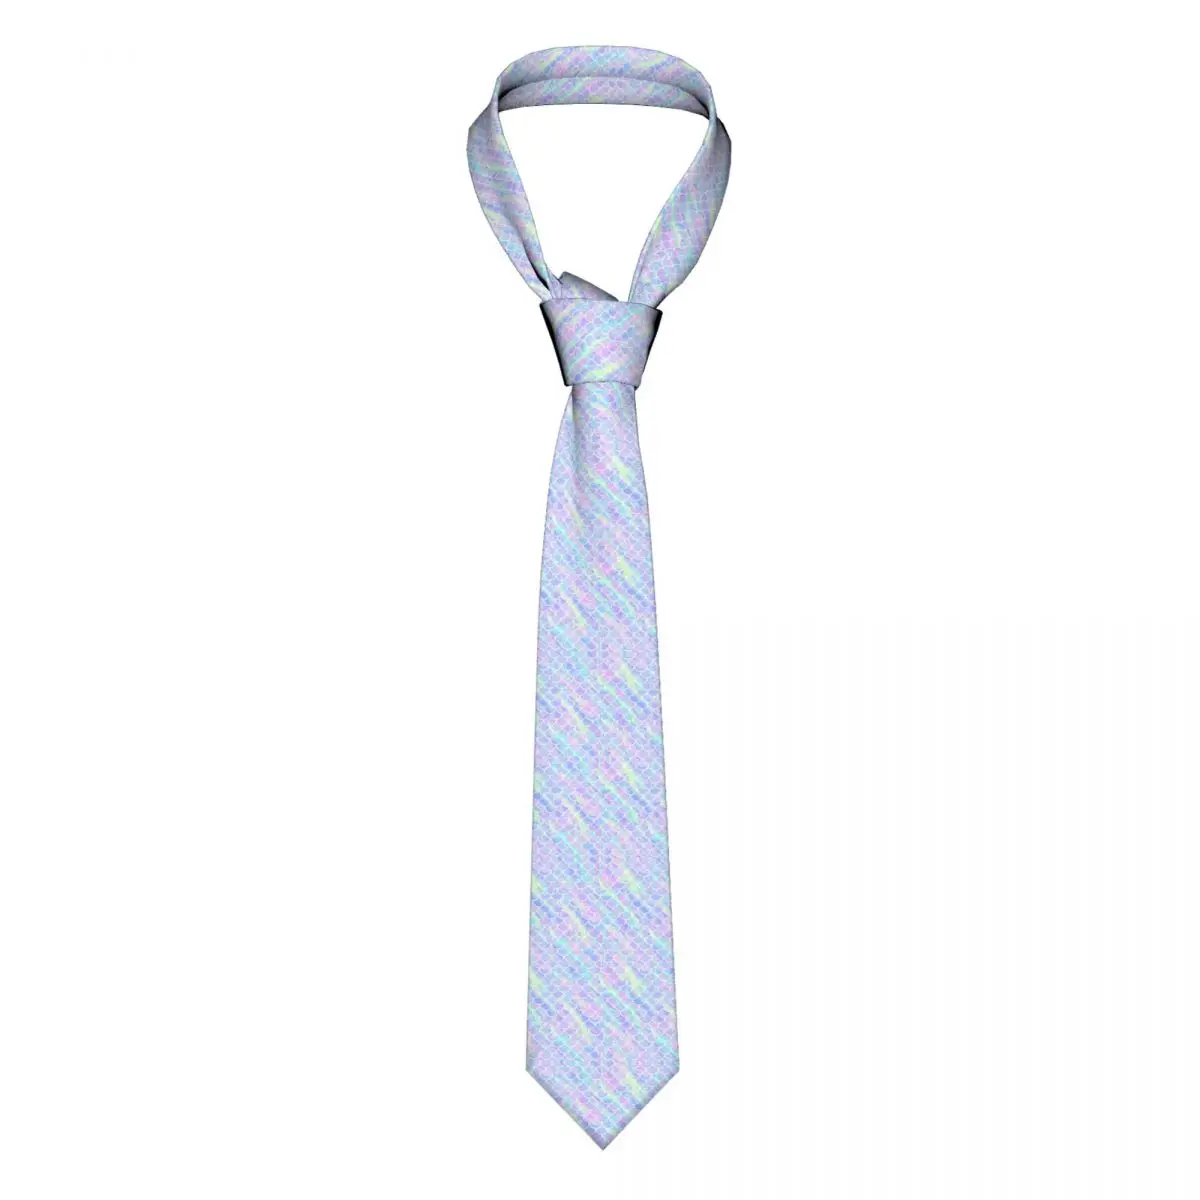 

Русалка весы печать галстук мраморная Радуга блузка дизайн шеи галстуки вечерние полиэстер шелк аксессуары для мужчин галстук